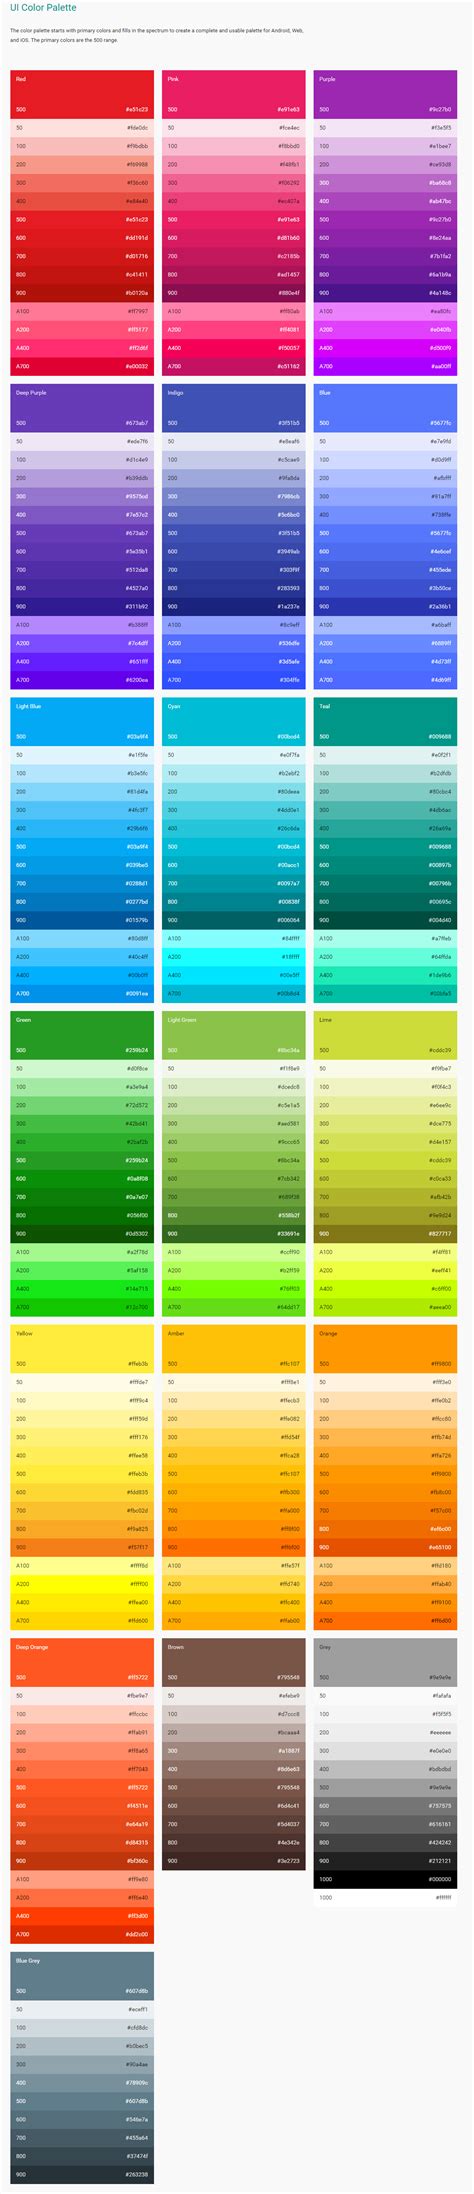 googles  color palette  material design google materialdesign design trends